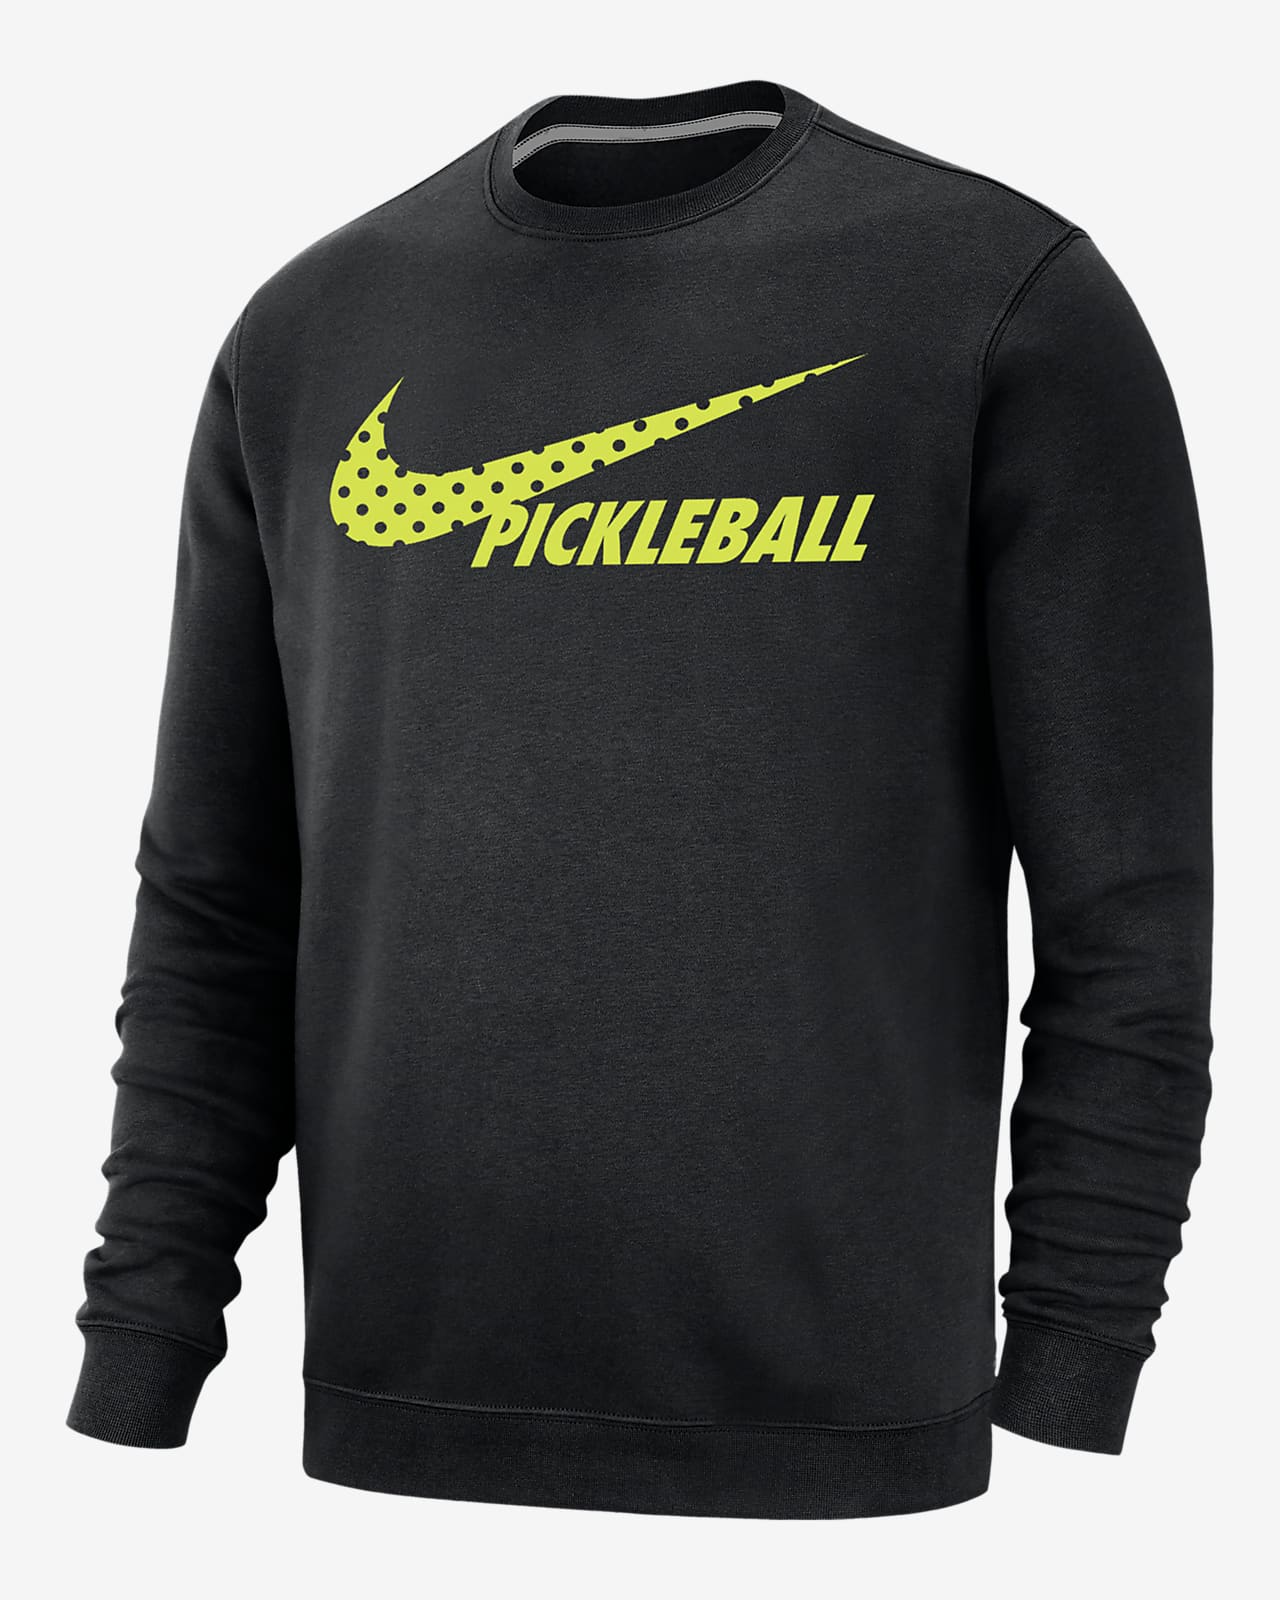 Nike Sportswear Club Fleece Men's Pickleball Sweatshirt